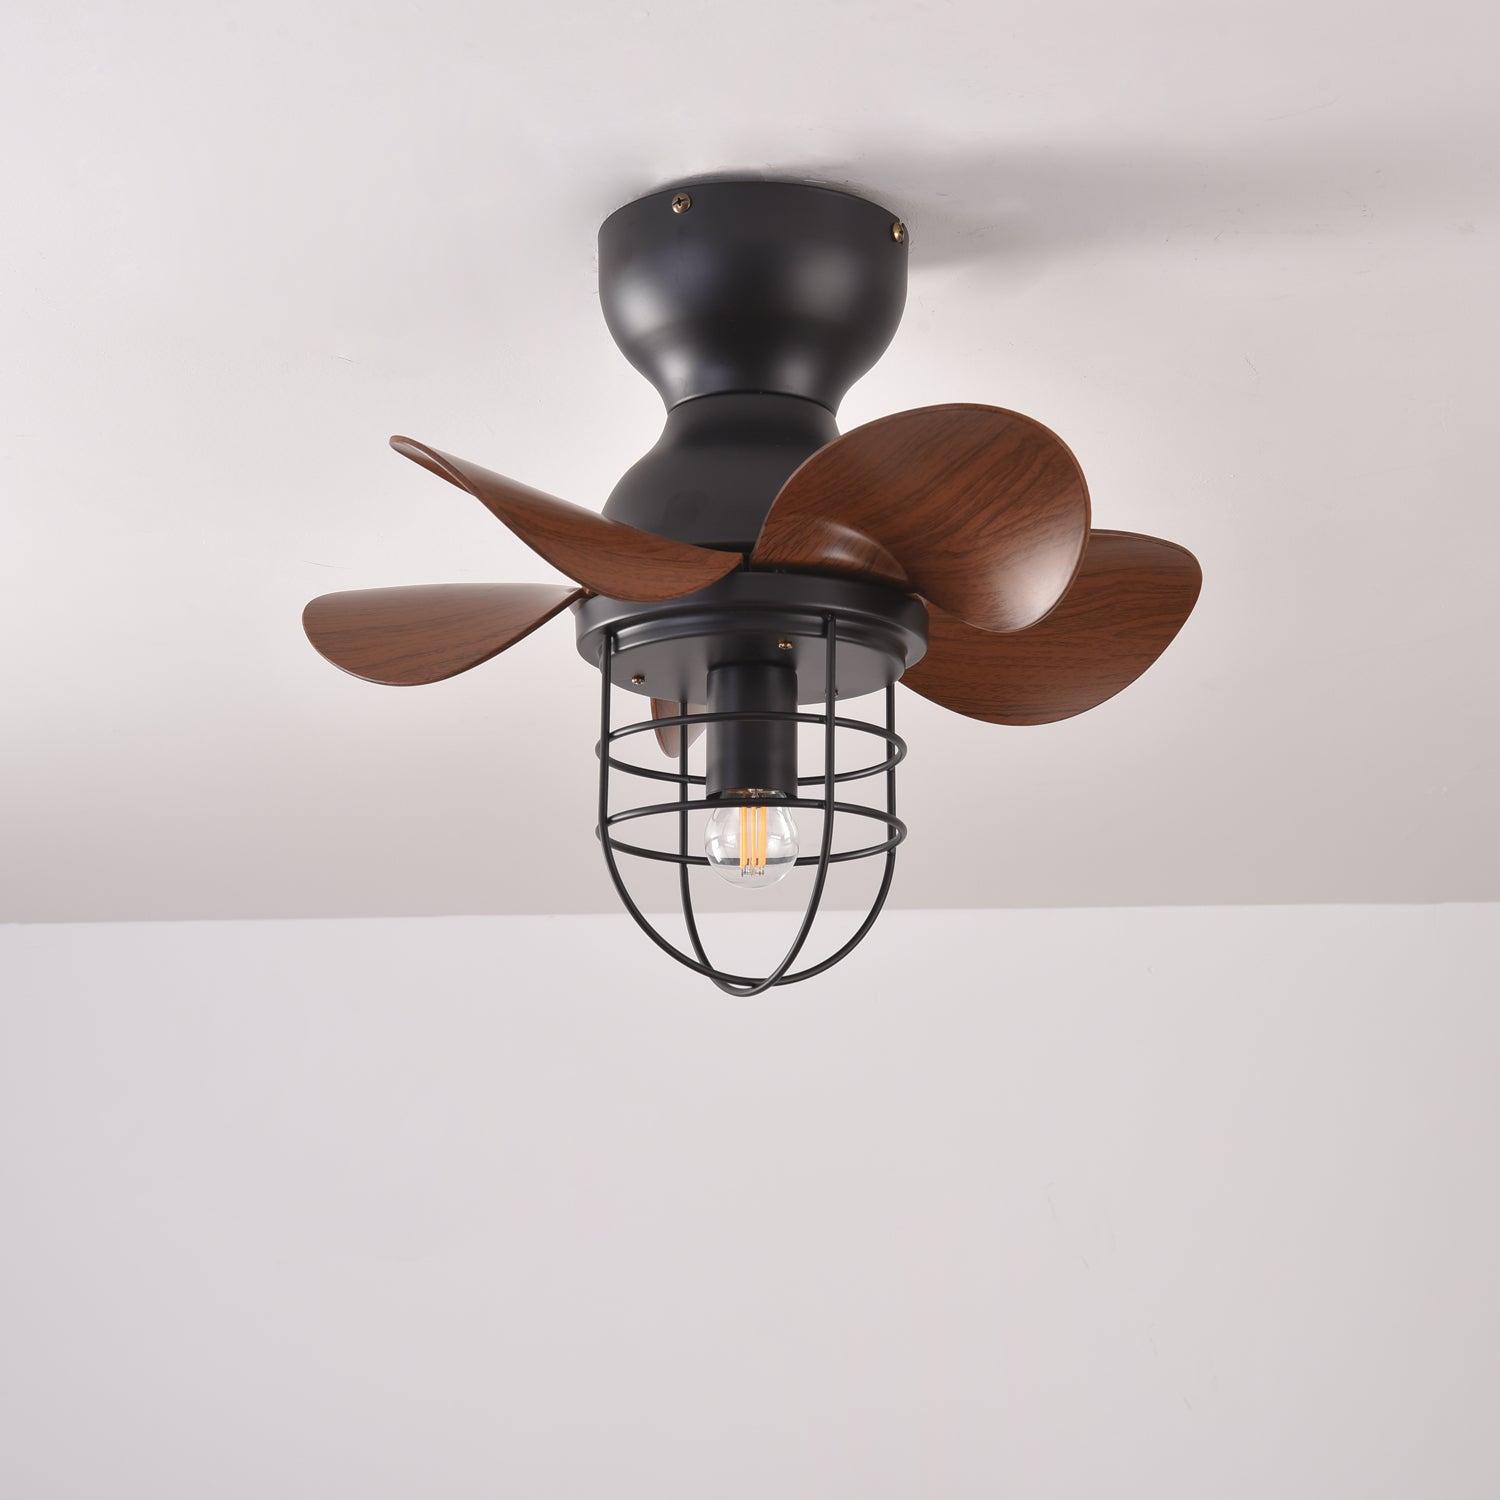 Trent 18" Ceiling Fan Light